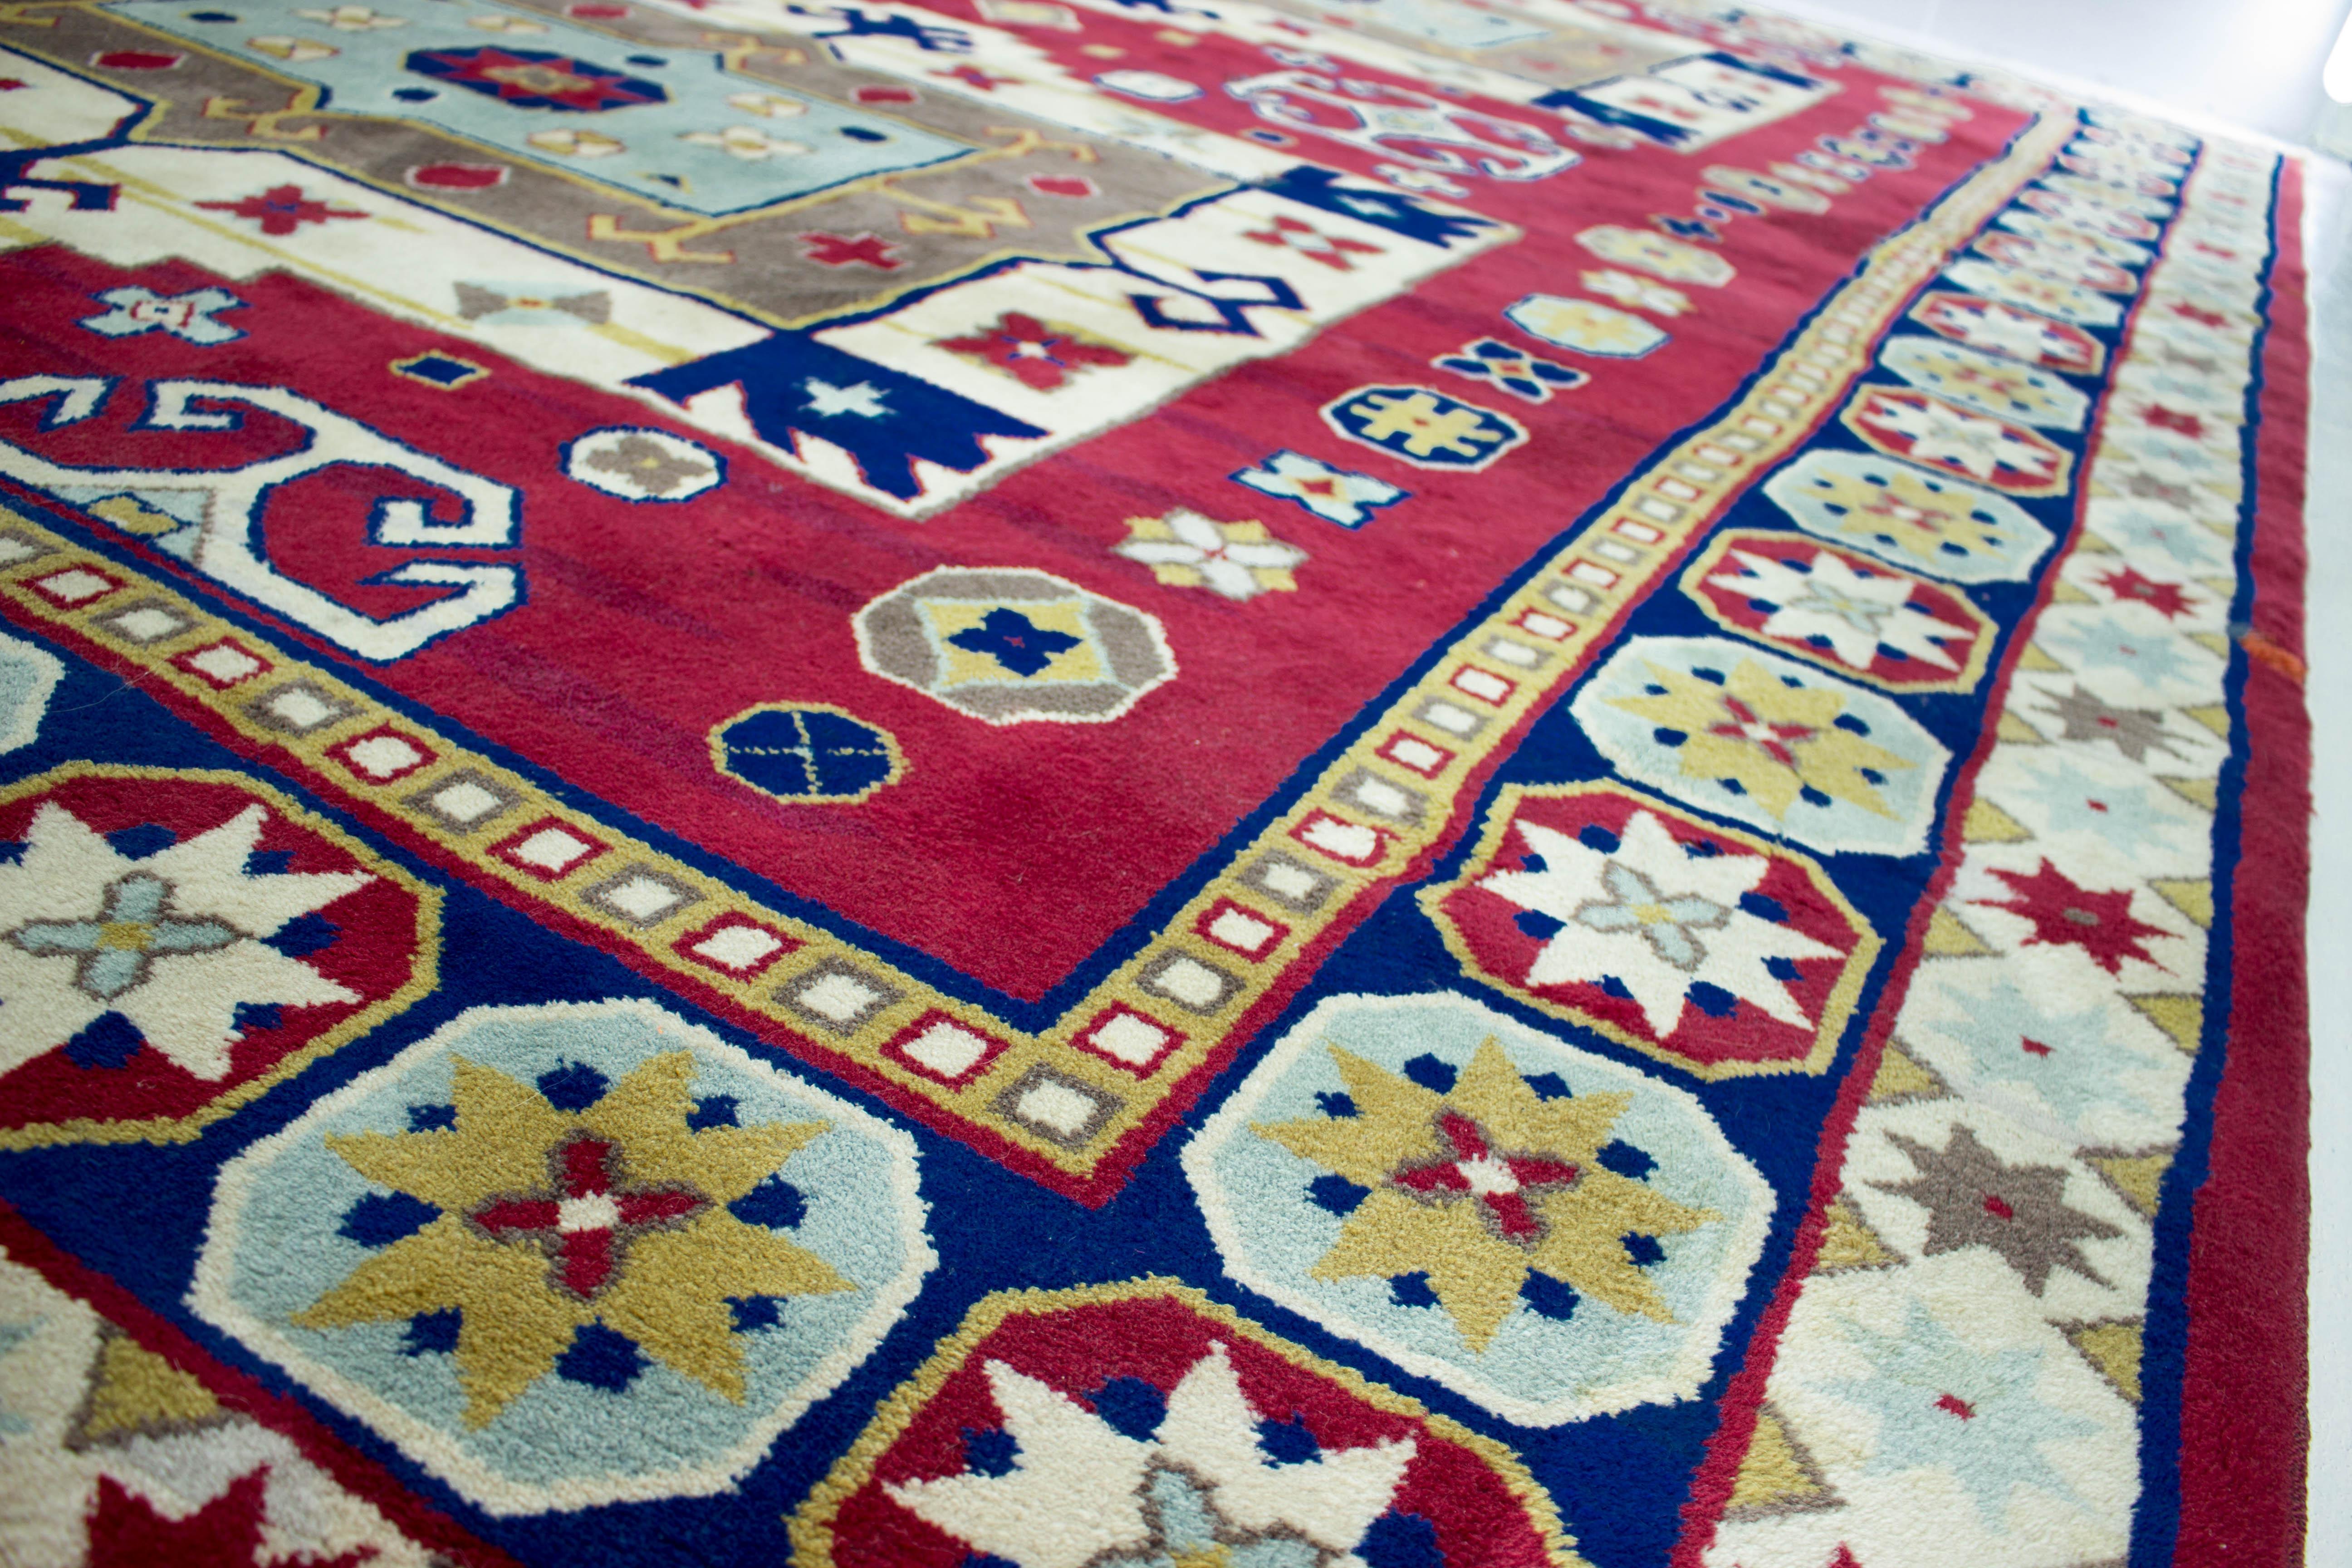 Ce Kazak noué à la main a été fabriqué dans les années 1960 et a été nettoyé professionnellement.
Les tapis caucasiens ont été fabriqués par de nombreux groupes tribaux différents, ils présentent de nombreuses caractéristiques communes. Recherchés